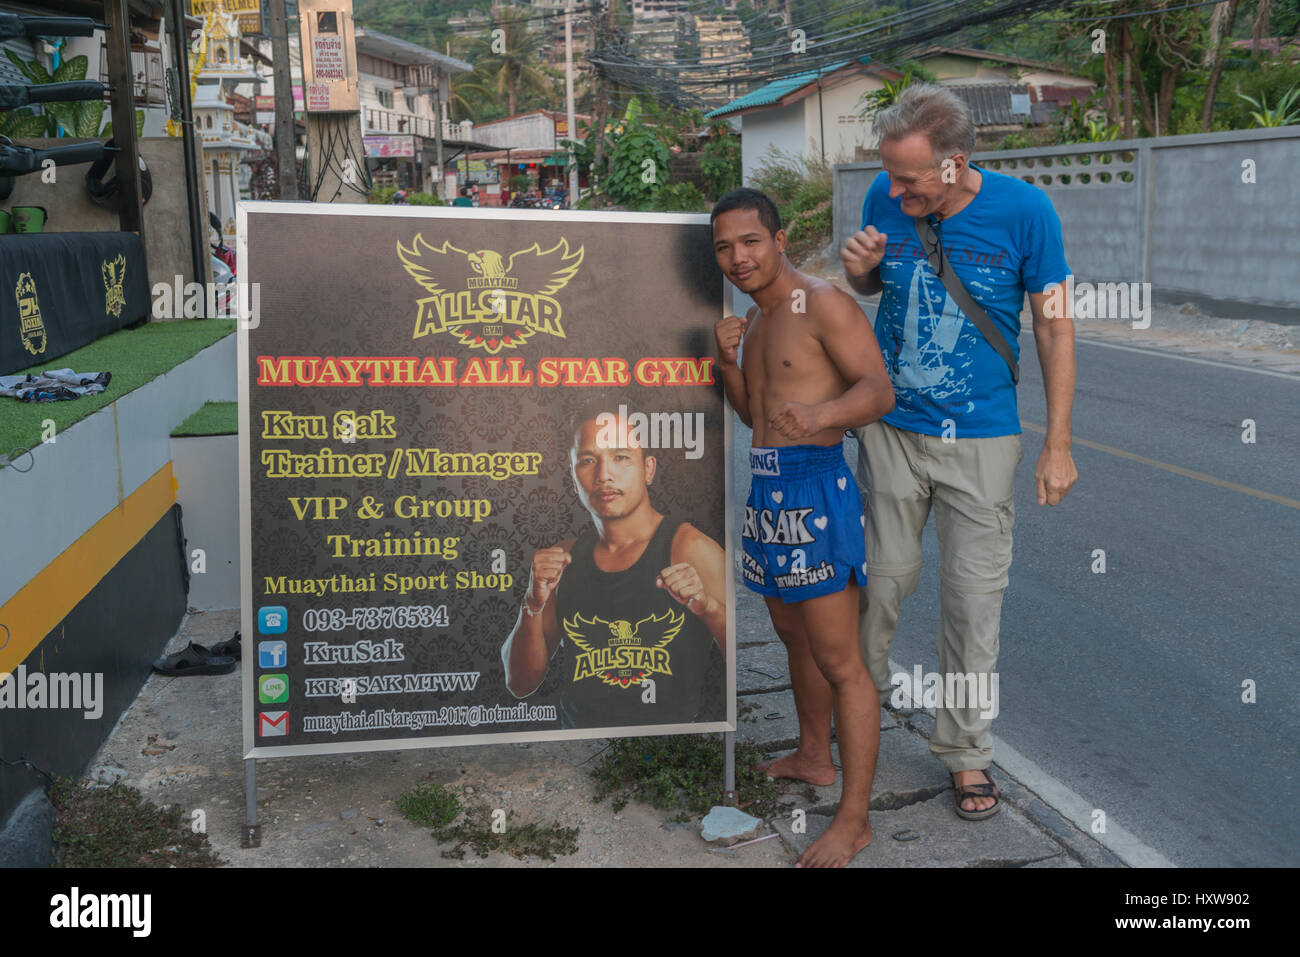 Kru Sak, un boxeador o tailandés Muay Thai, posa junto a un cartel ofrece su gimnasio mientras que un turista occidental se une en Phuket, Tailandia. 09-Mar-2017 Foto de stock